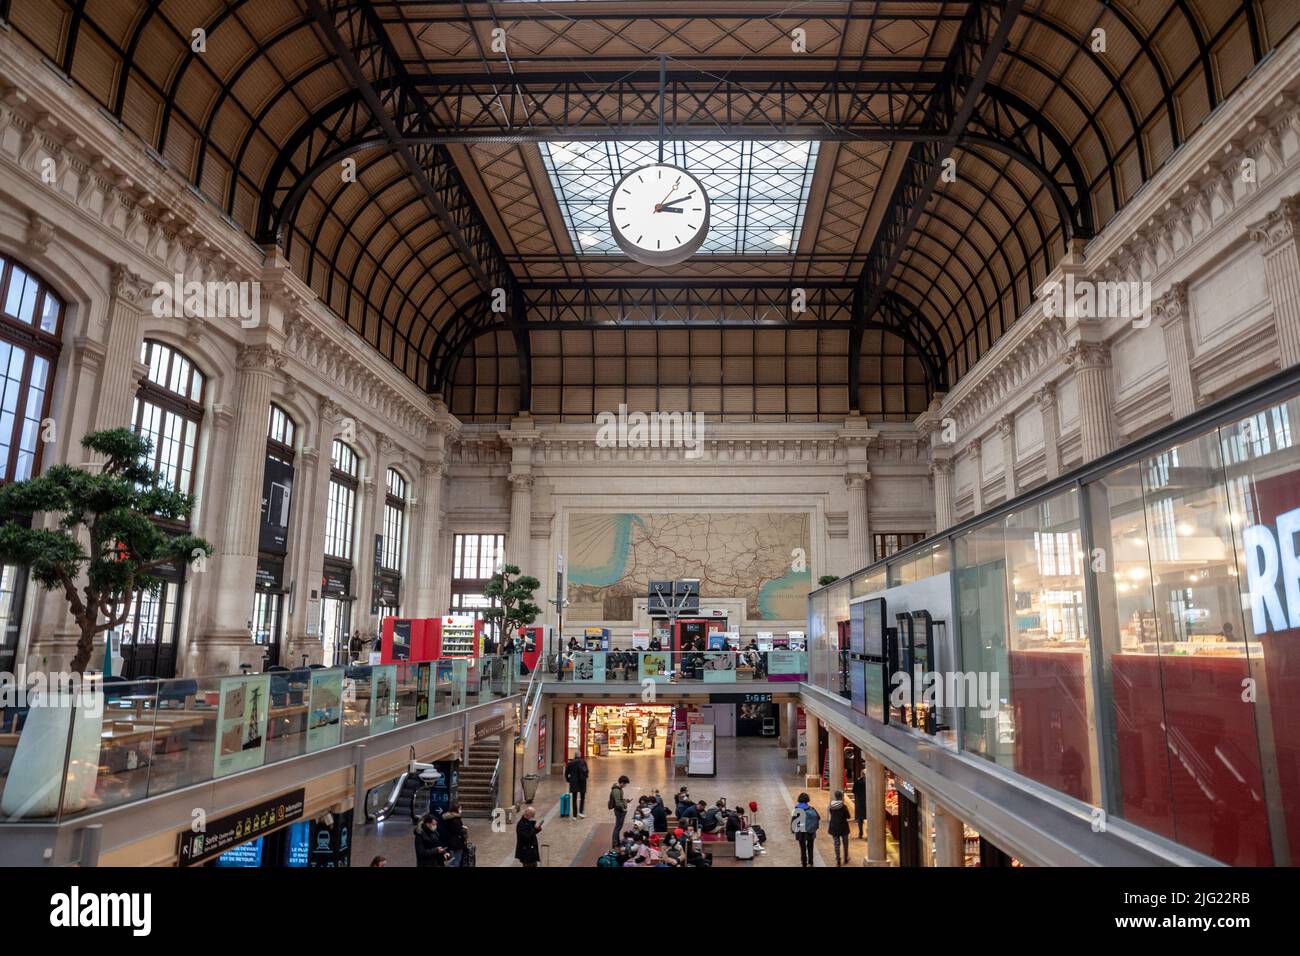 Gare de bordeaux saint jean hi-res stock photography and images - Alamy